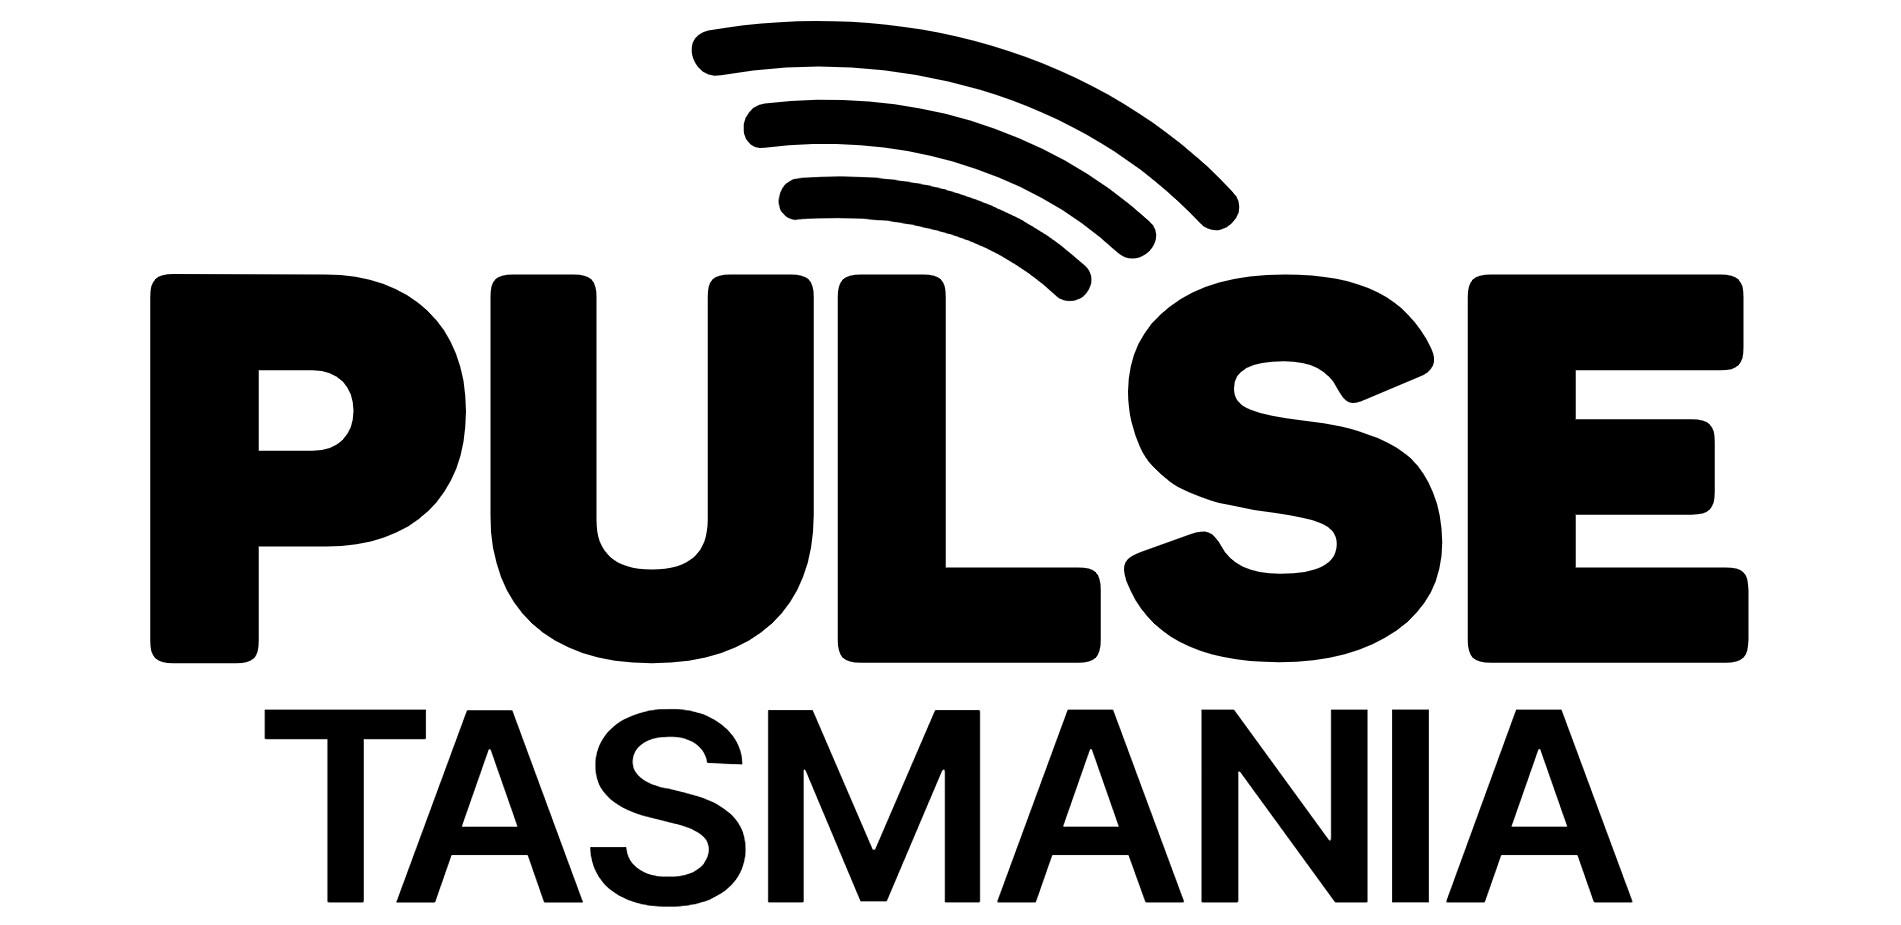 Pulse Tasmania Logo Black